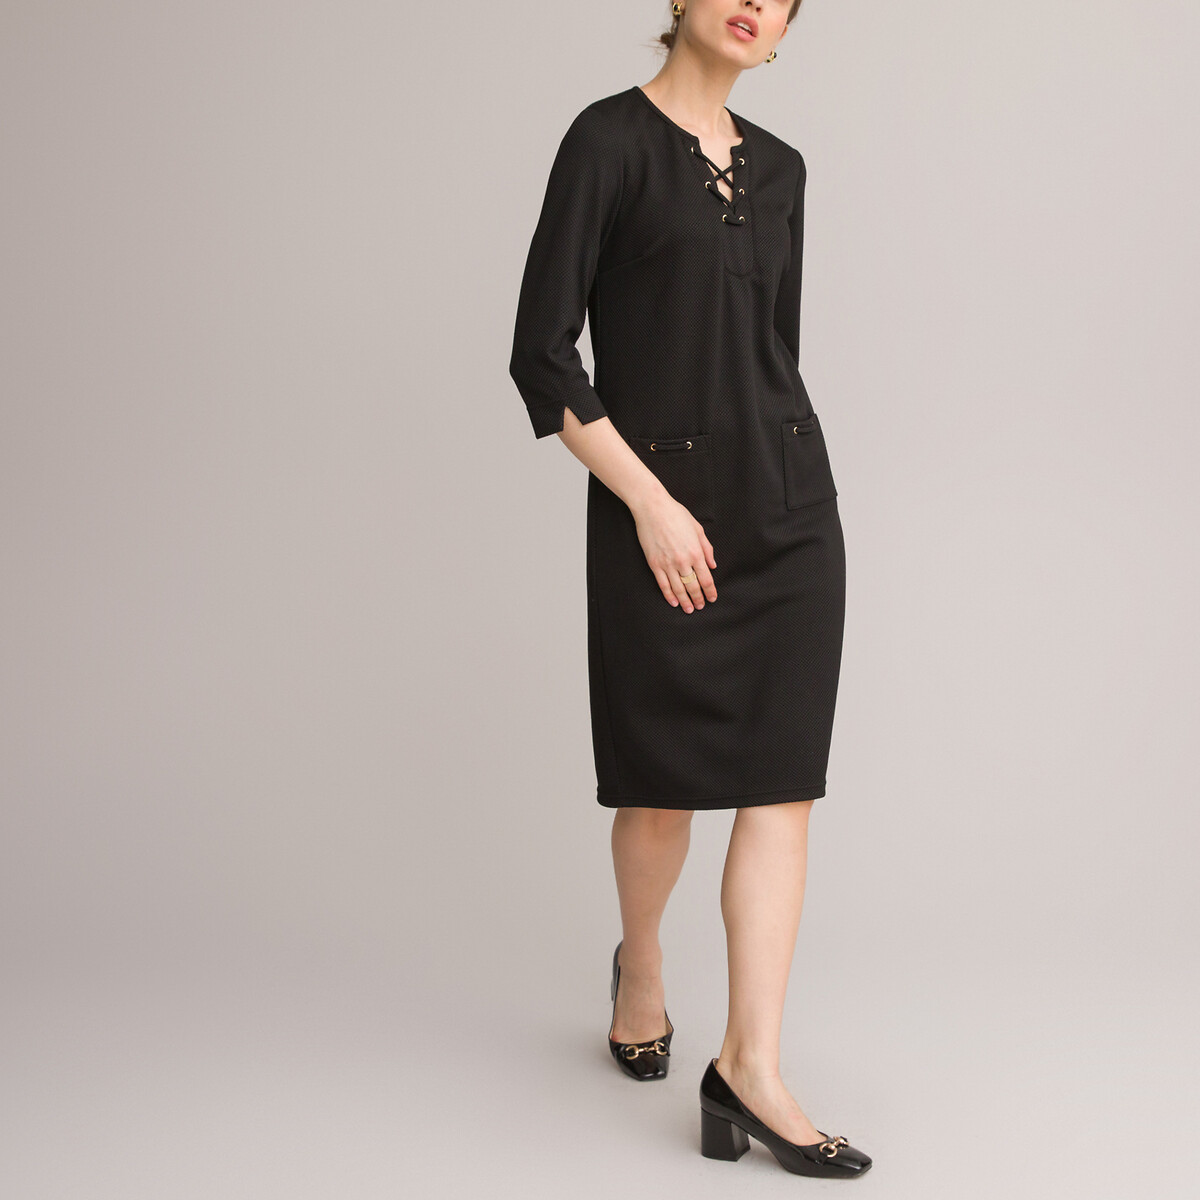 Платье ANNE WEYBURN Платье Прямое средней длины рукава 34 50 черный, размер 50 - фото 2